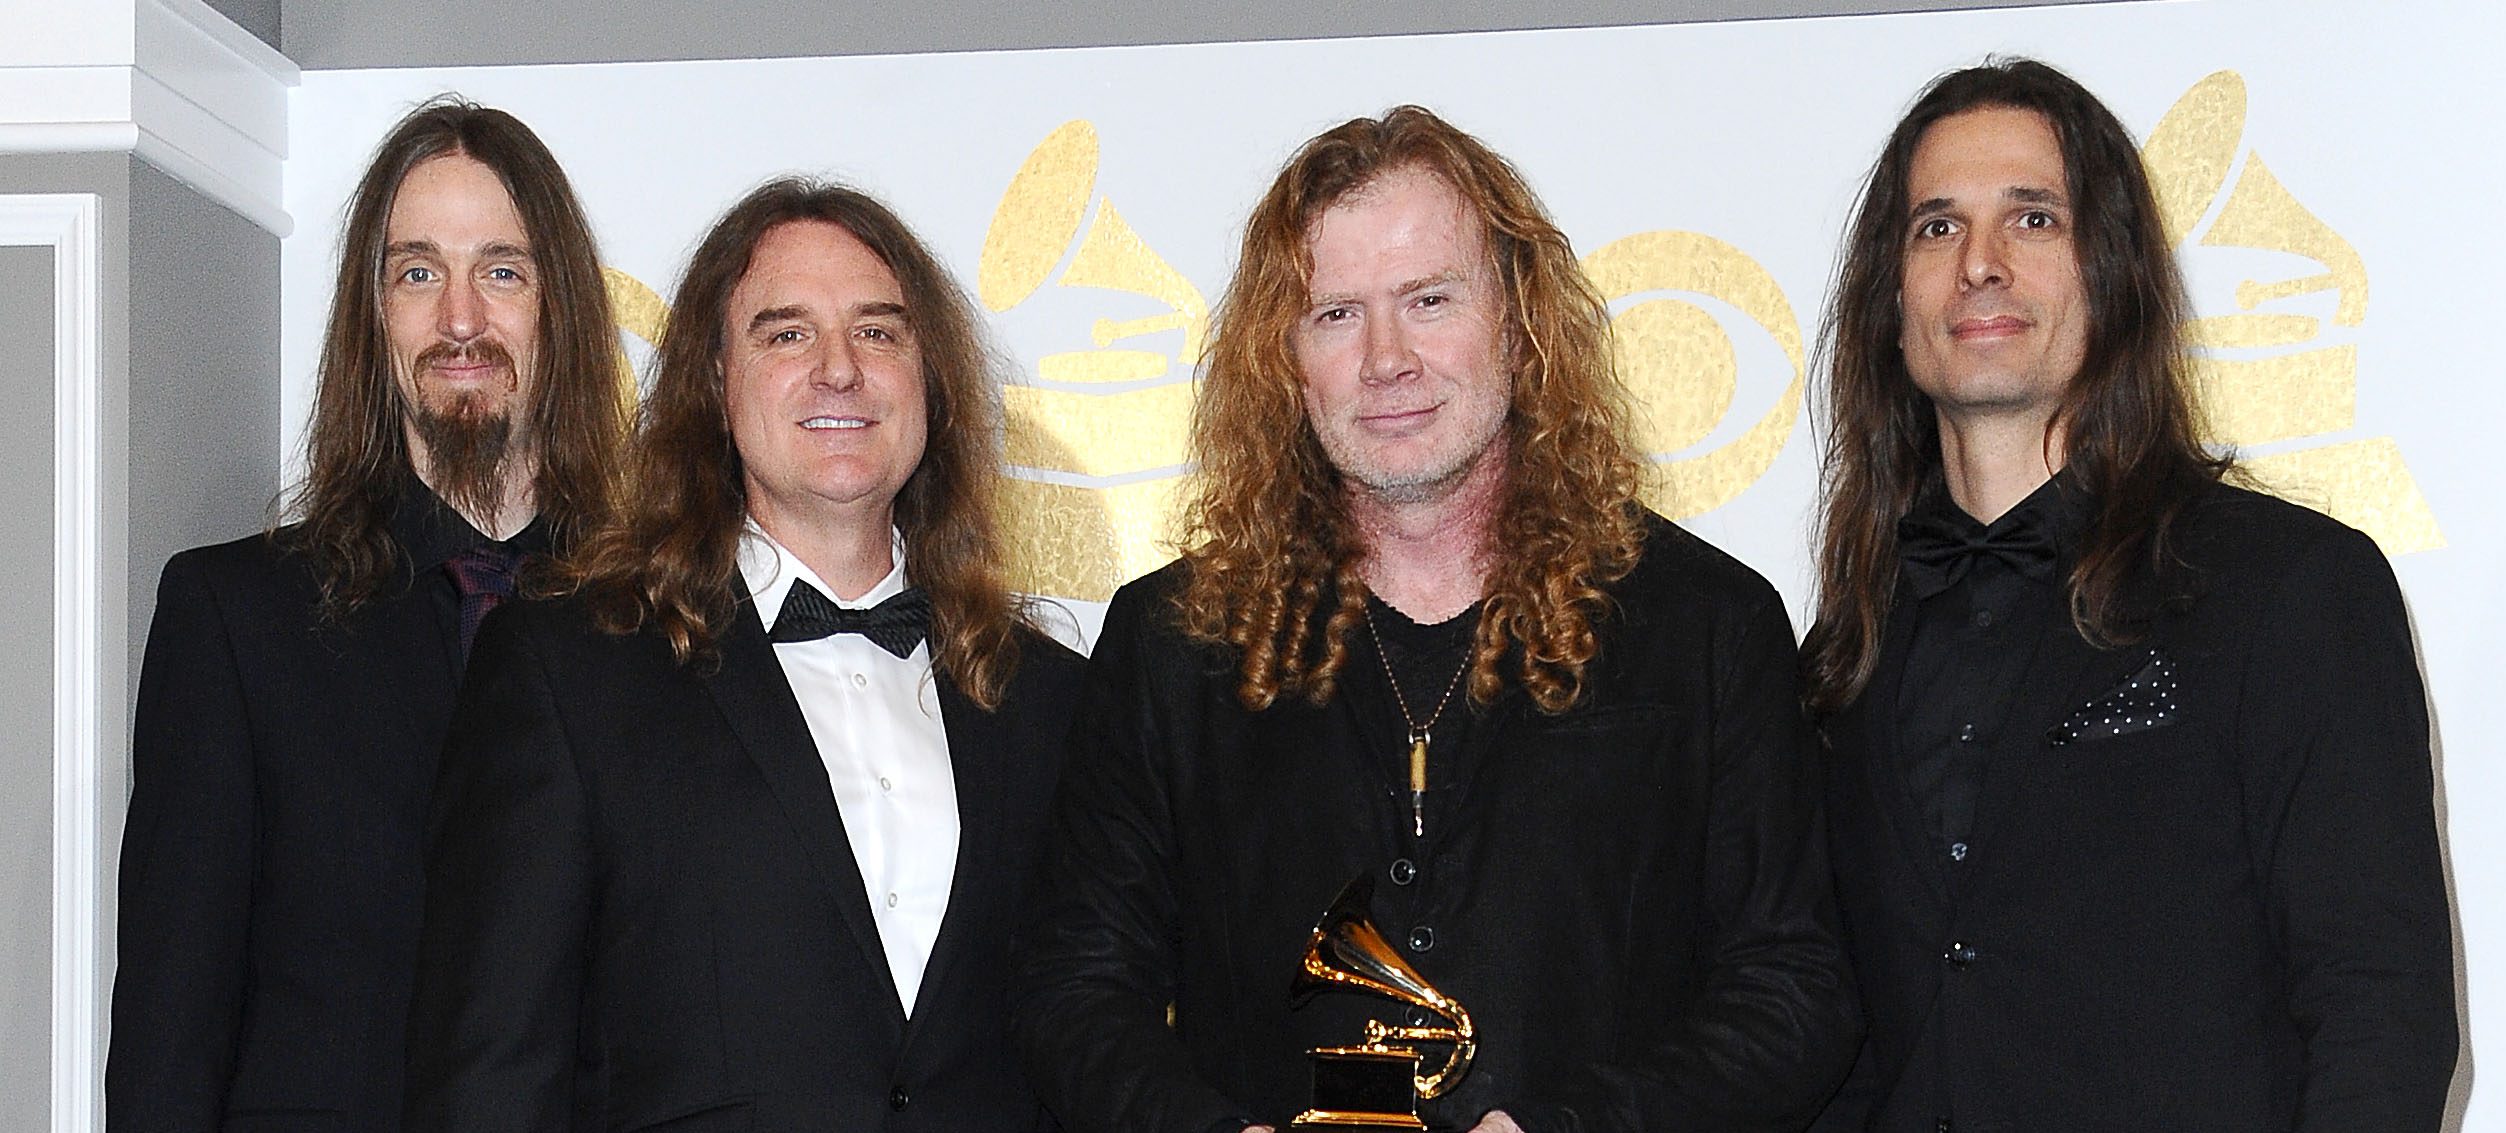 Megadeth y su sencillo "We'll Be Back" consiguen una nominación de los